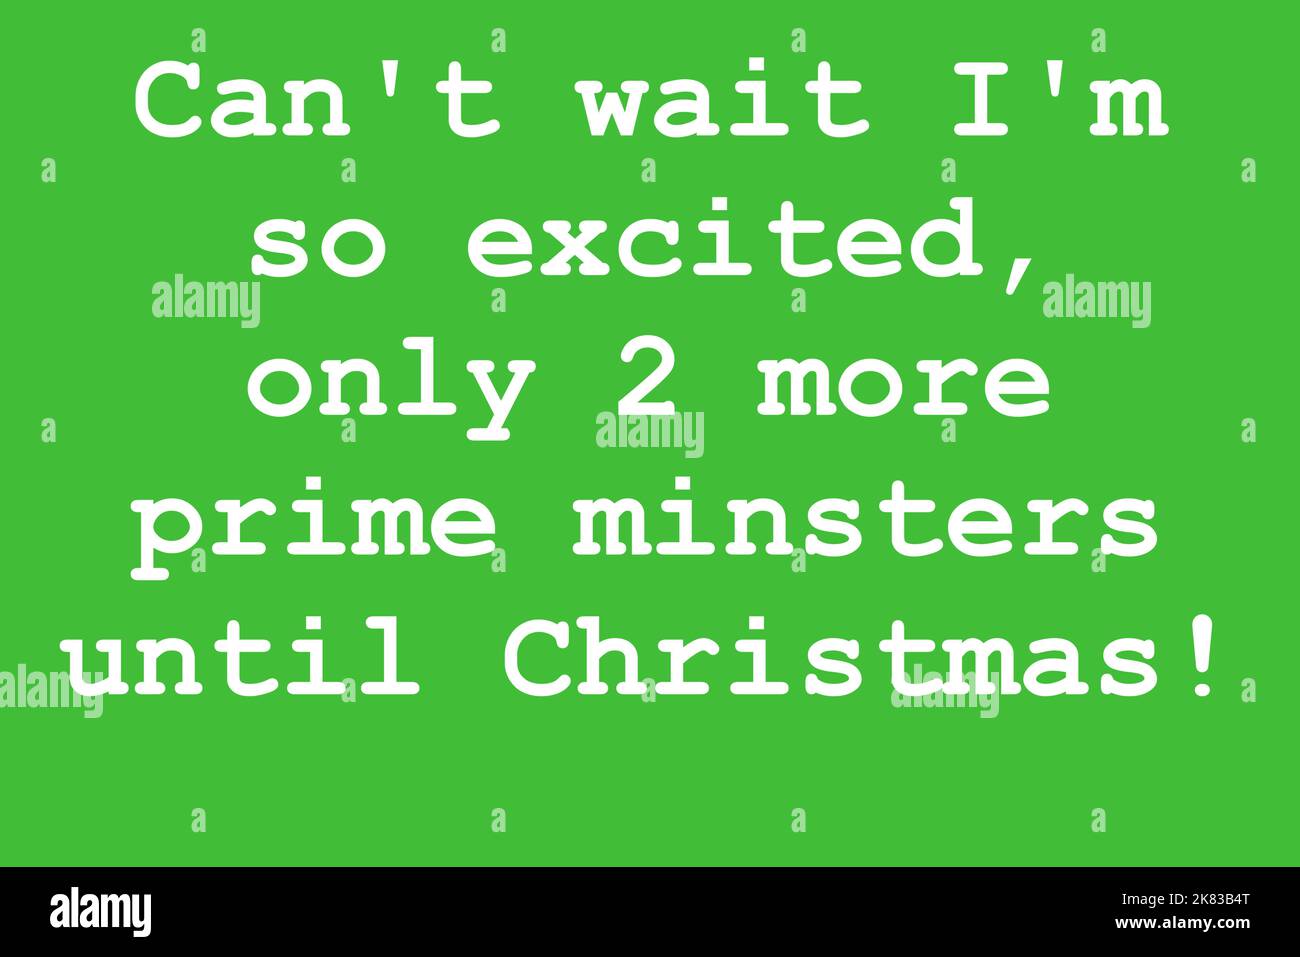 J'ai hâte d'être si excitée, seulement 2 autres minsters avant Noël. Satire politique Royaume-Uni Banque D'Images